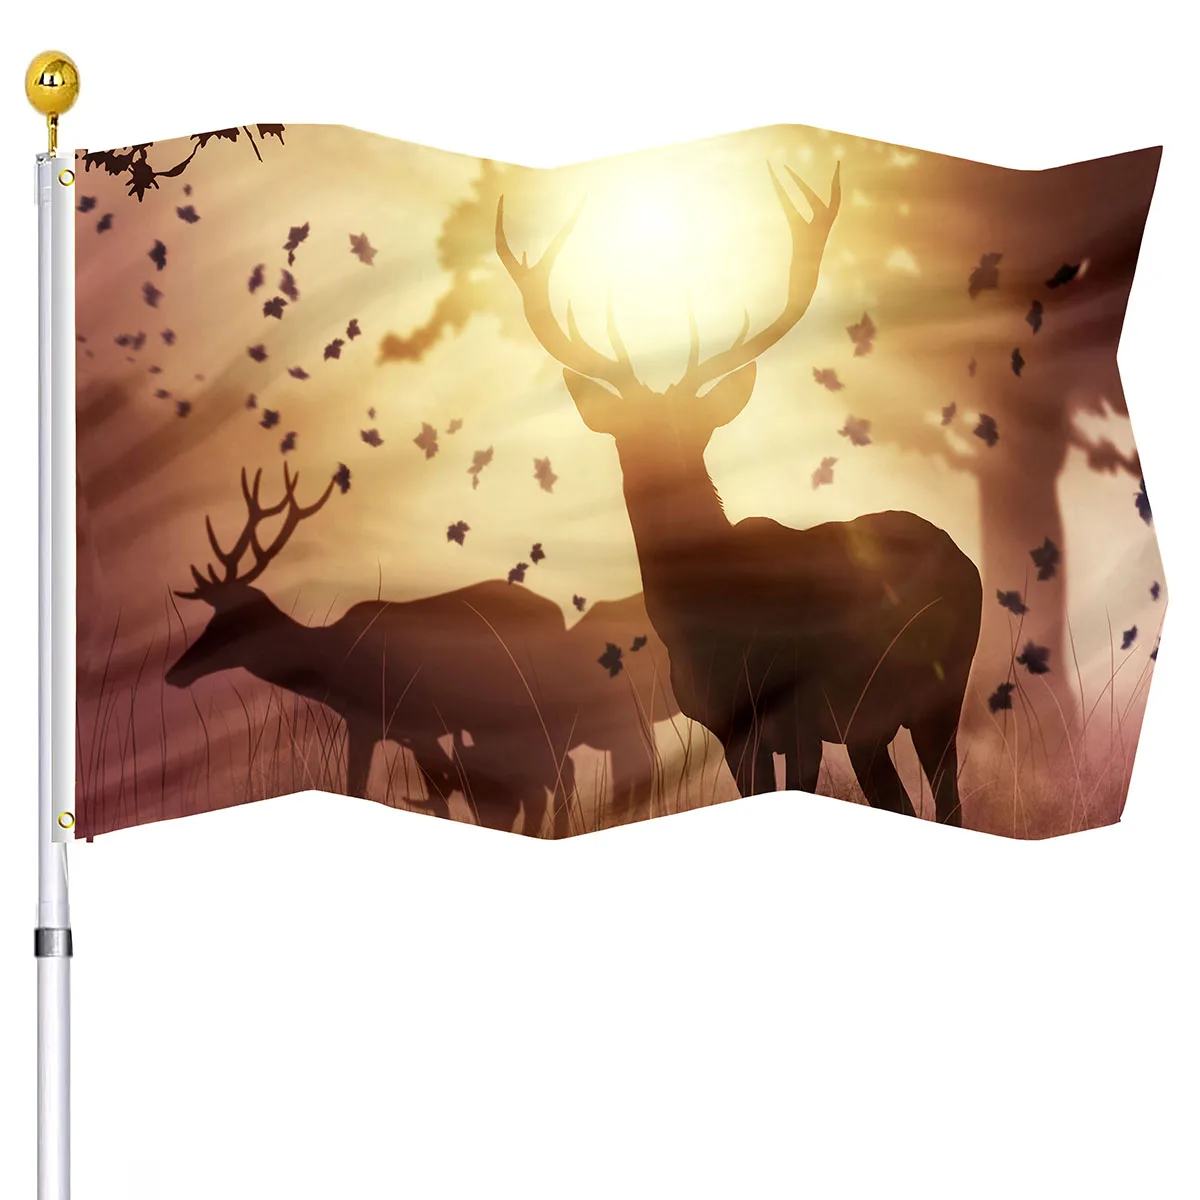 Görüntü /176324-Vahşi-geyik-bayrağı-ev-partisi-dekorasyon-için_cdn/share-2.jpeg